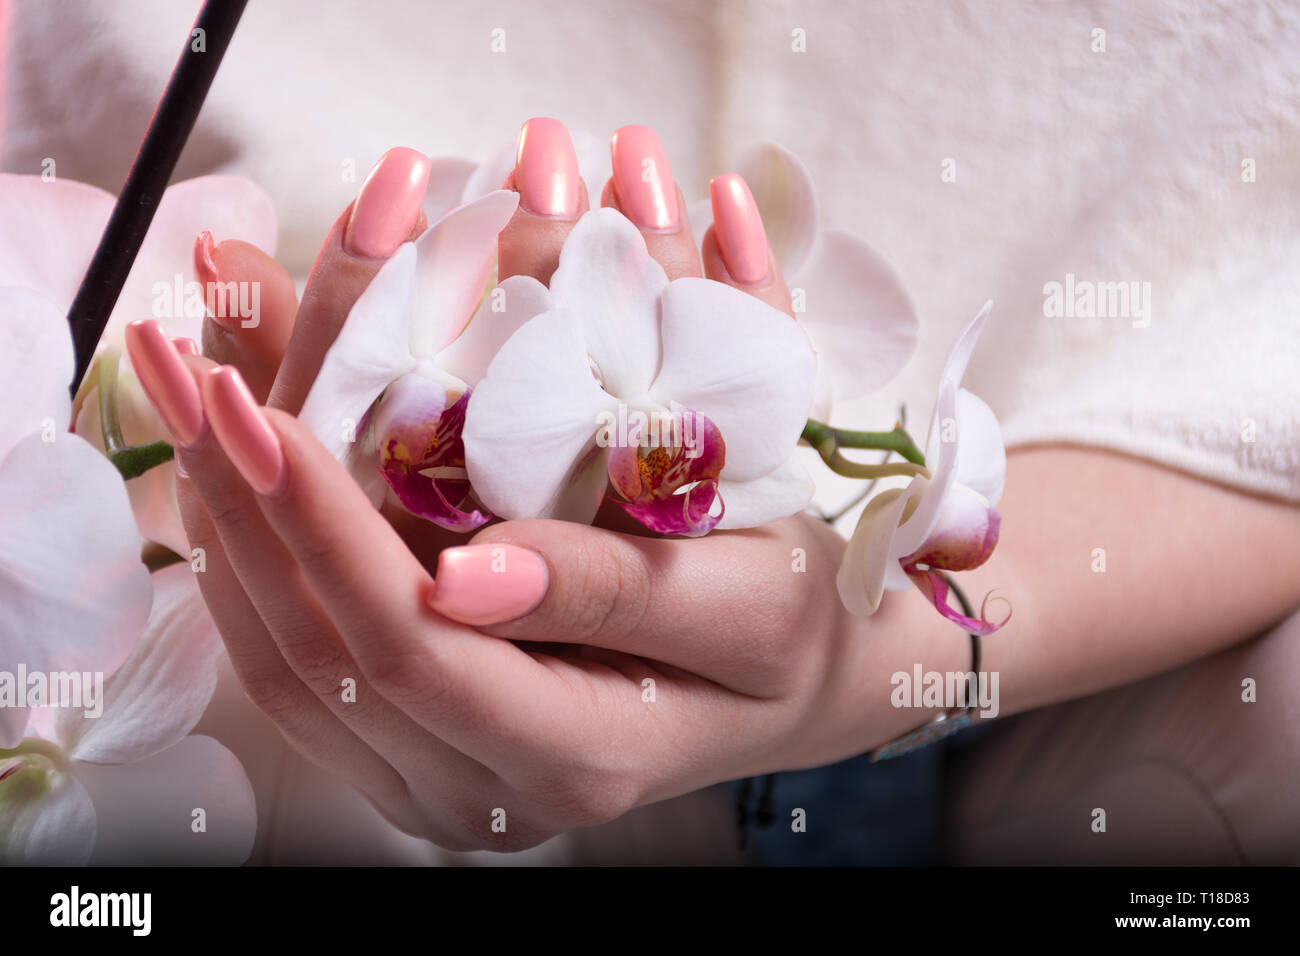 Jeune fille mains avec ongles rose printemps polish holding white orchid  fleur dans les mains. Manucure beauté et concept. Close up, selective focus  Photo Stock - Alamy